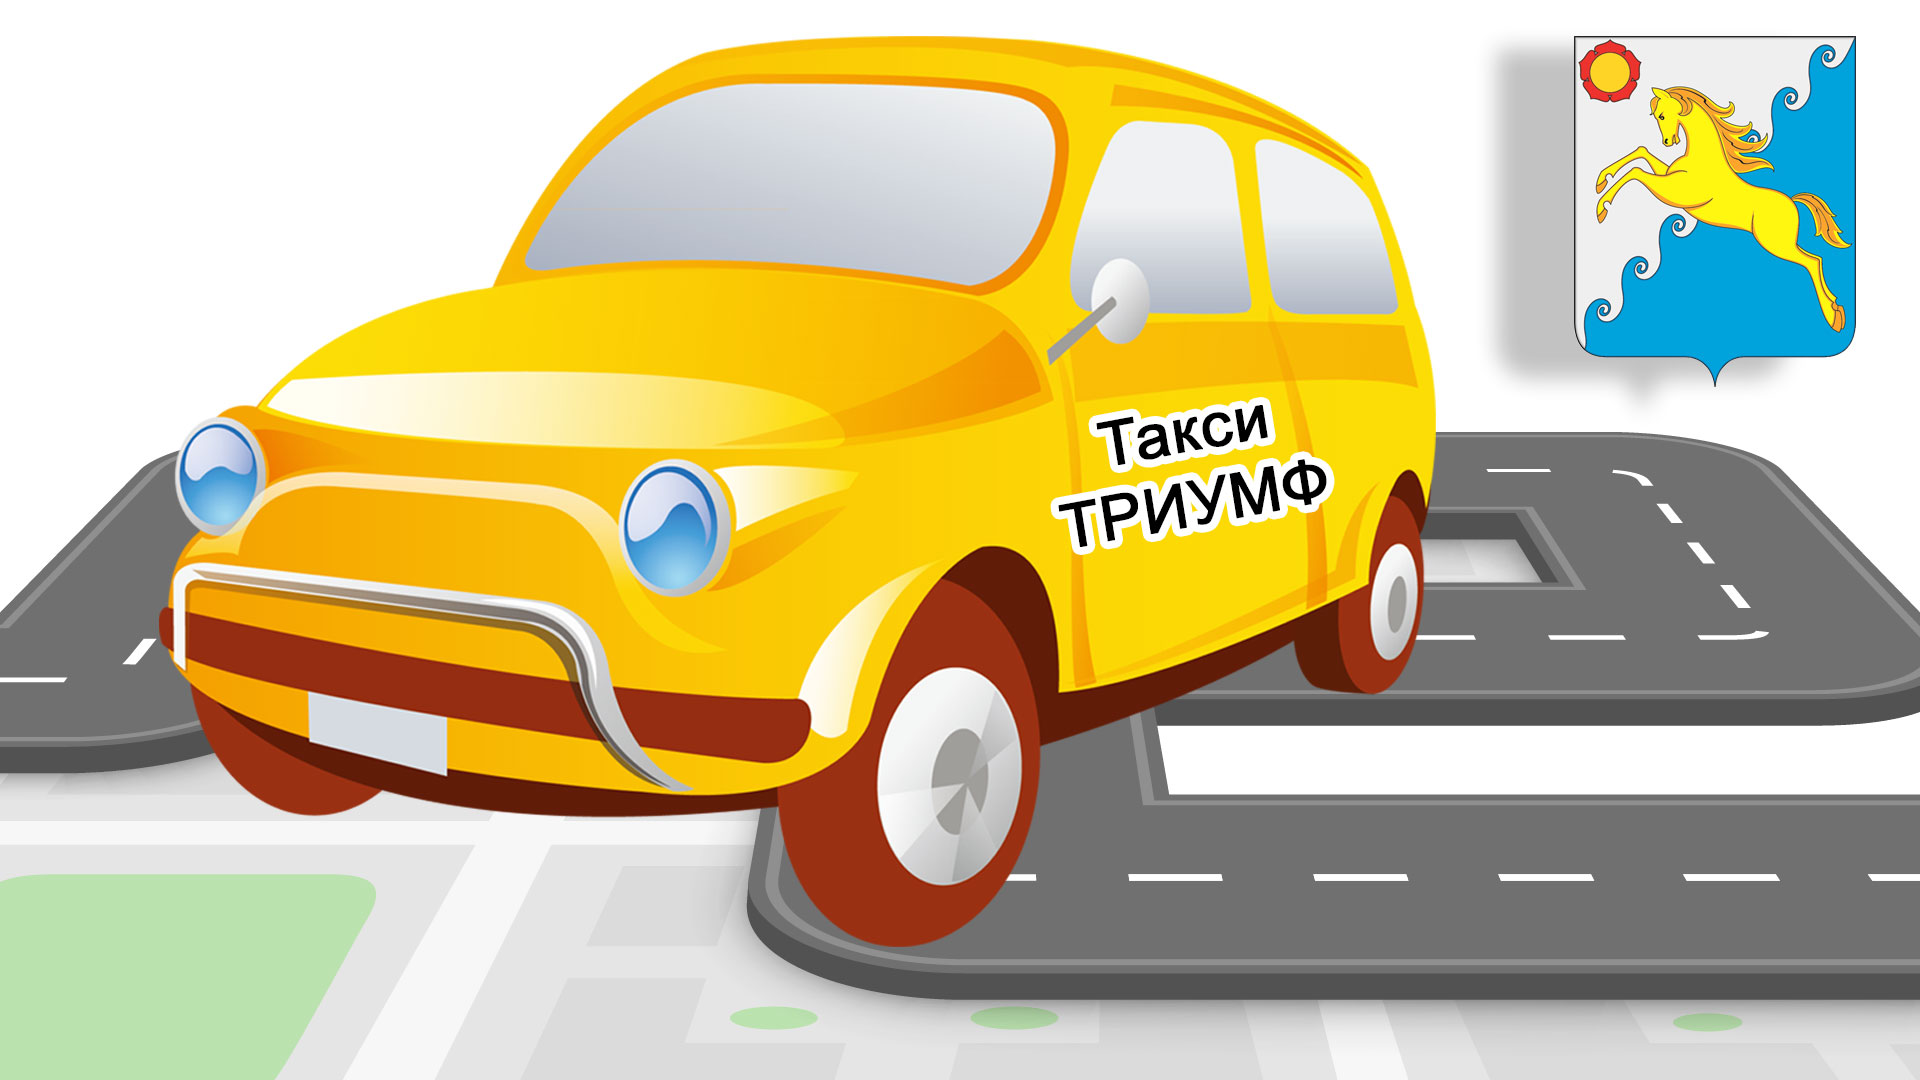 Машина с надписью "Такси Триумф", на фоне поселка Усть-Абакан.